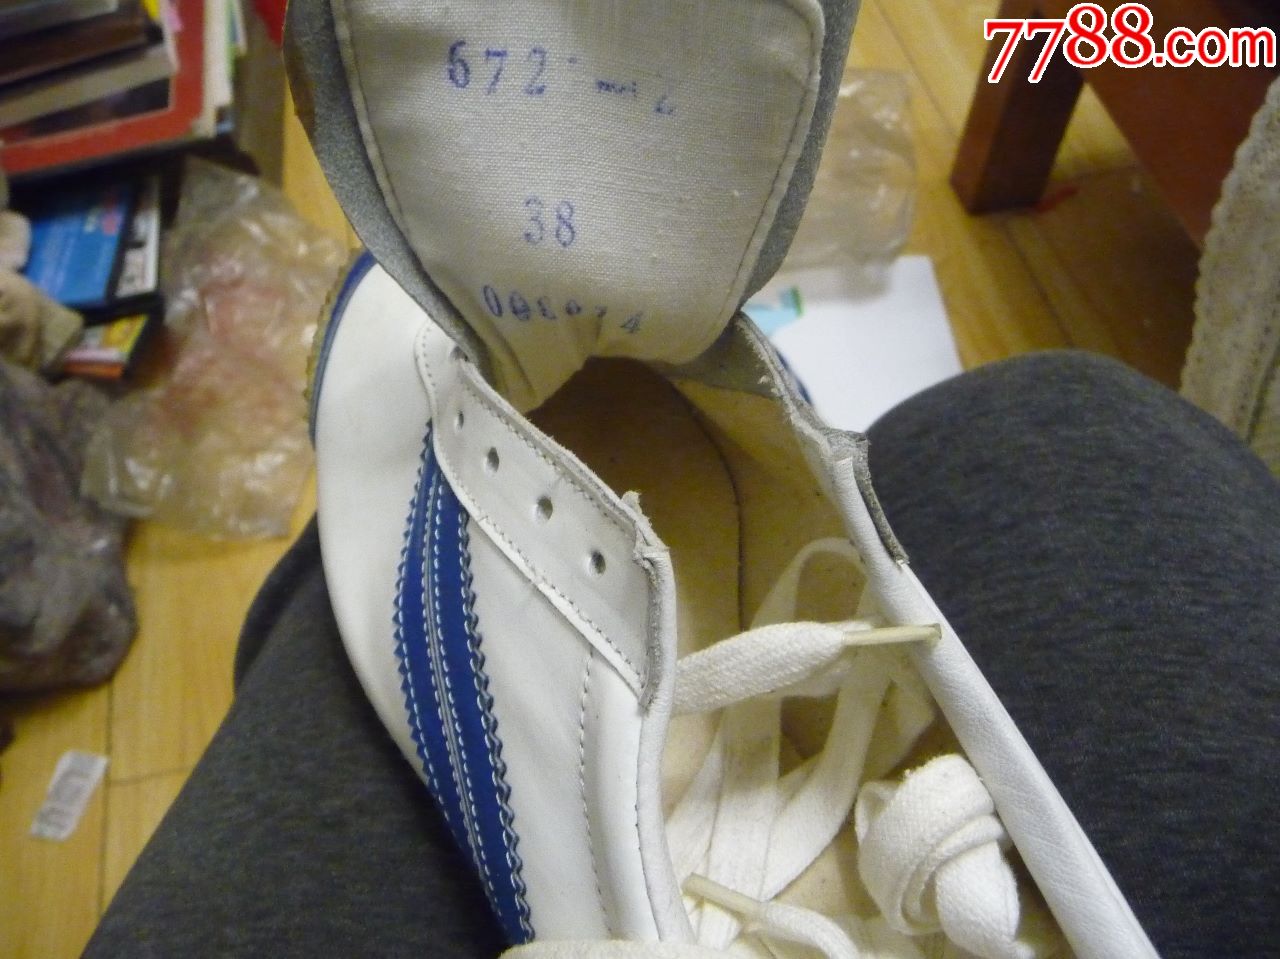 古董运动鞋收藏//上世纪八九十年代的火炬牌皮制运动鞋(38码)未穿